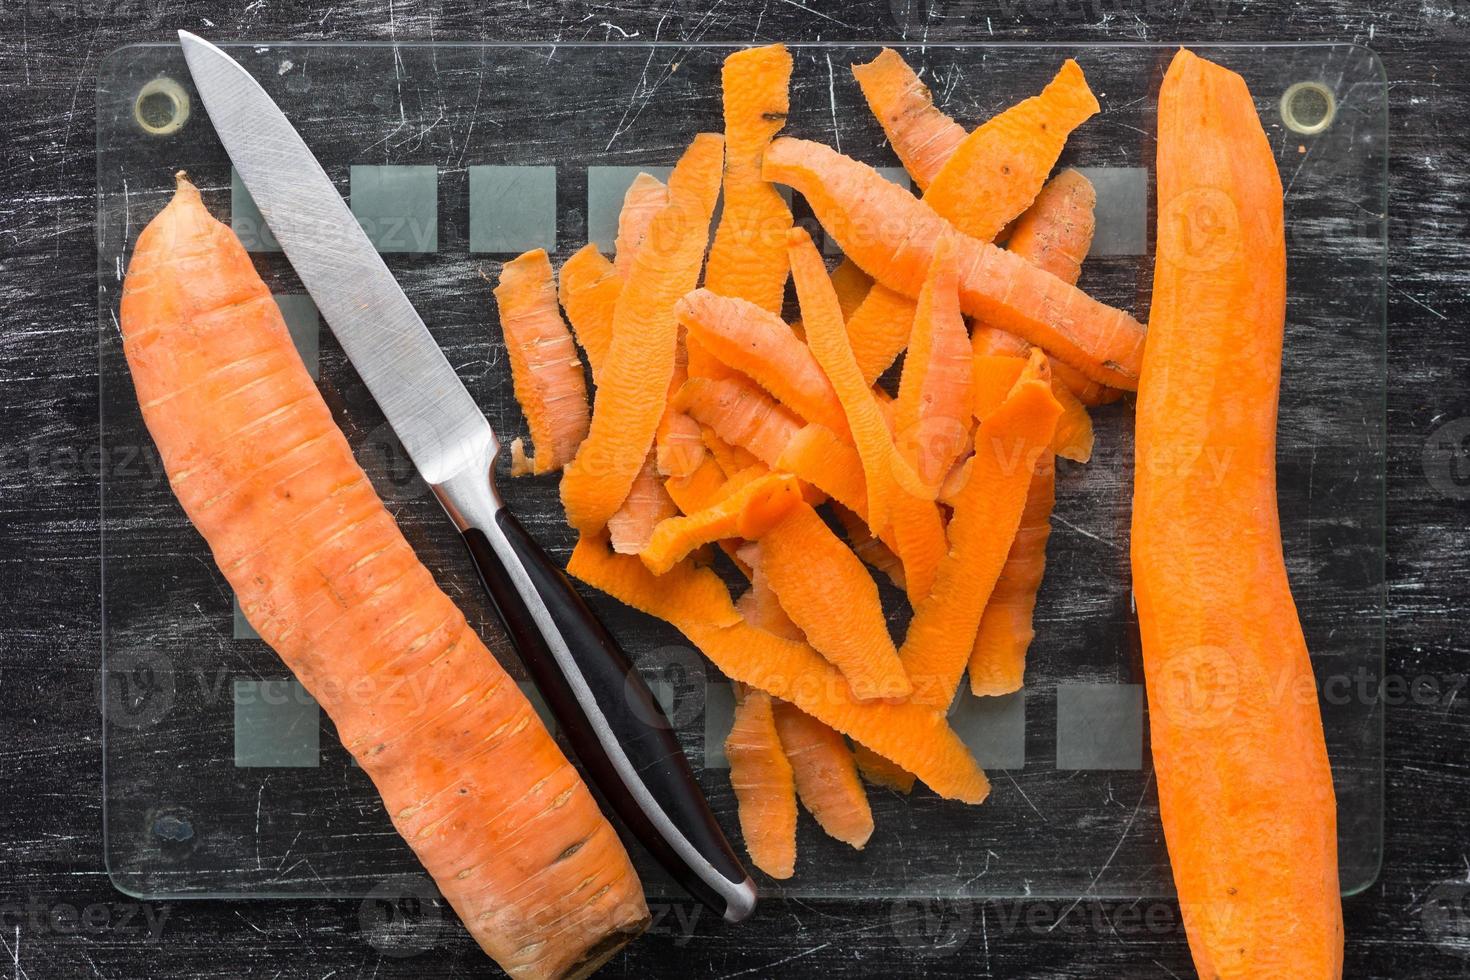 carota non sbucciata e carota sbucciata con la buccia foto